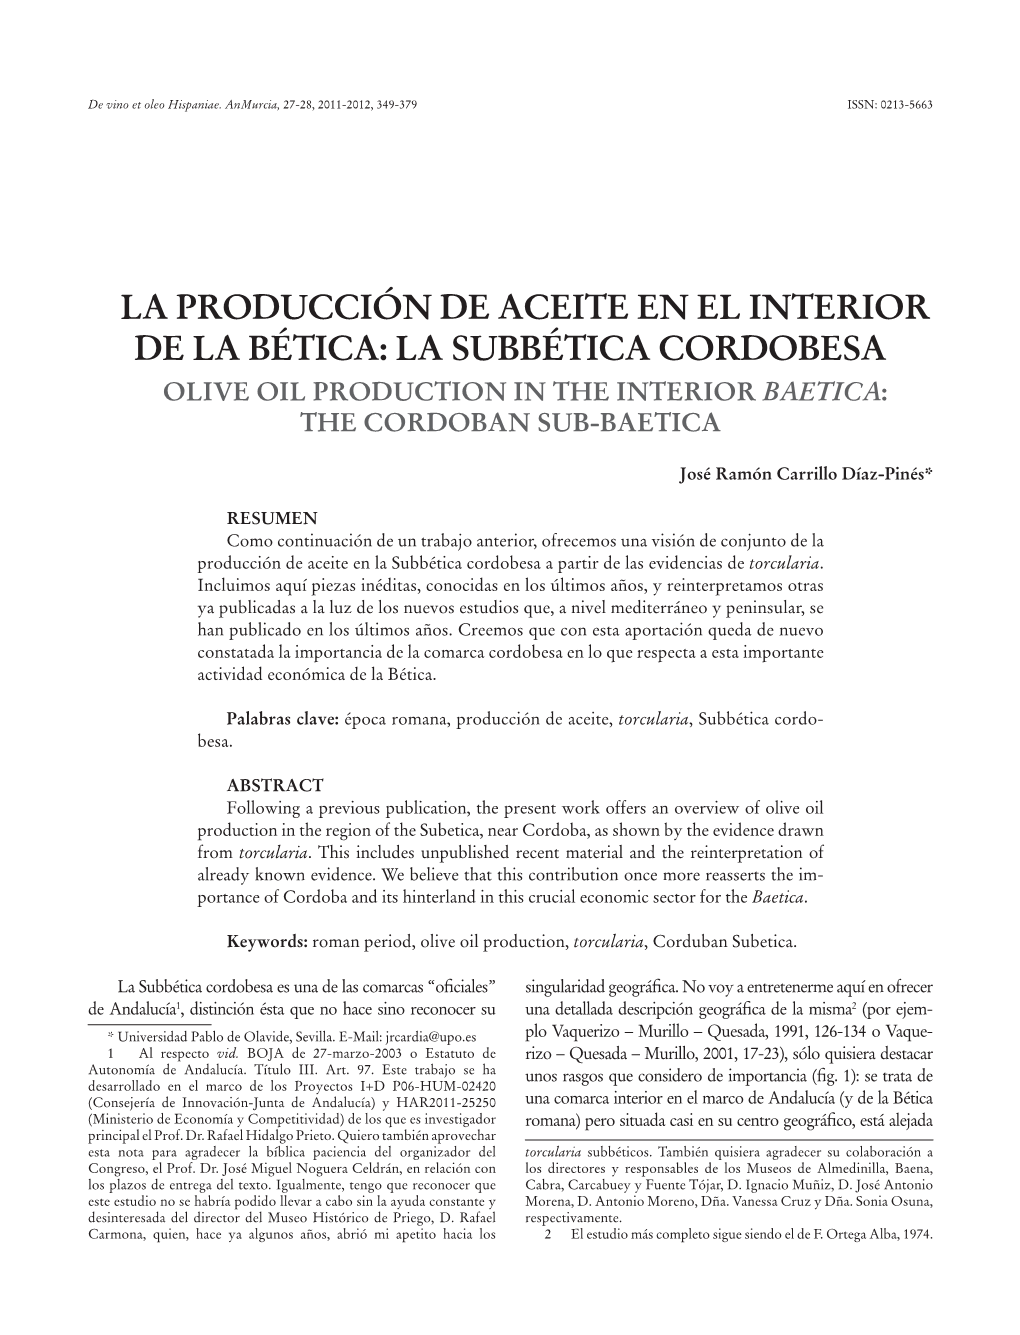 La Subbética Cordobesa Olive Oil Production in the Interior Baetica: the Cordoban Sub-Baetica